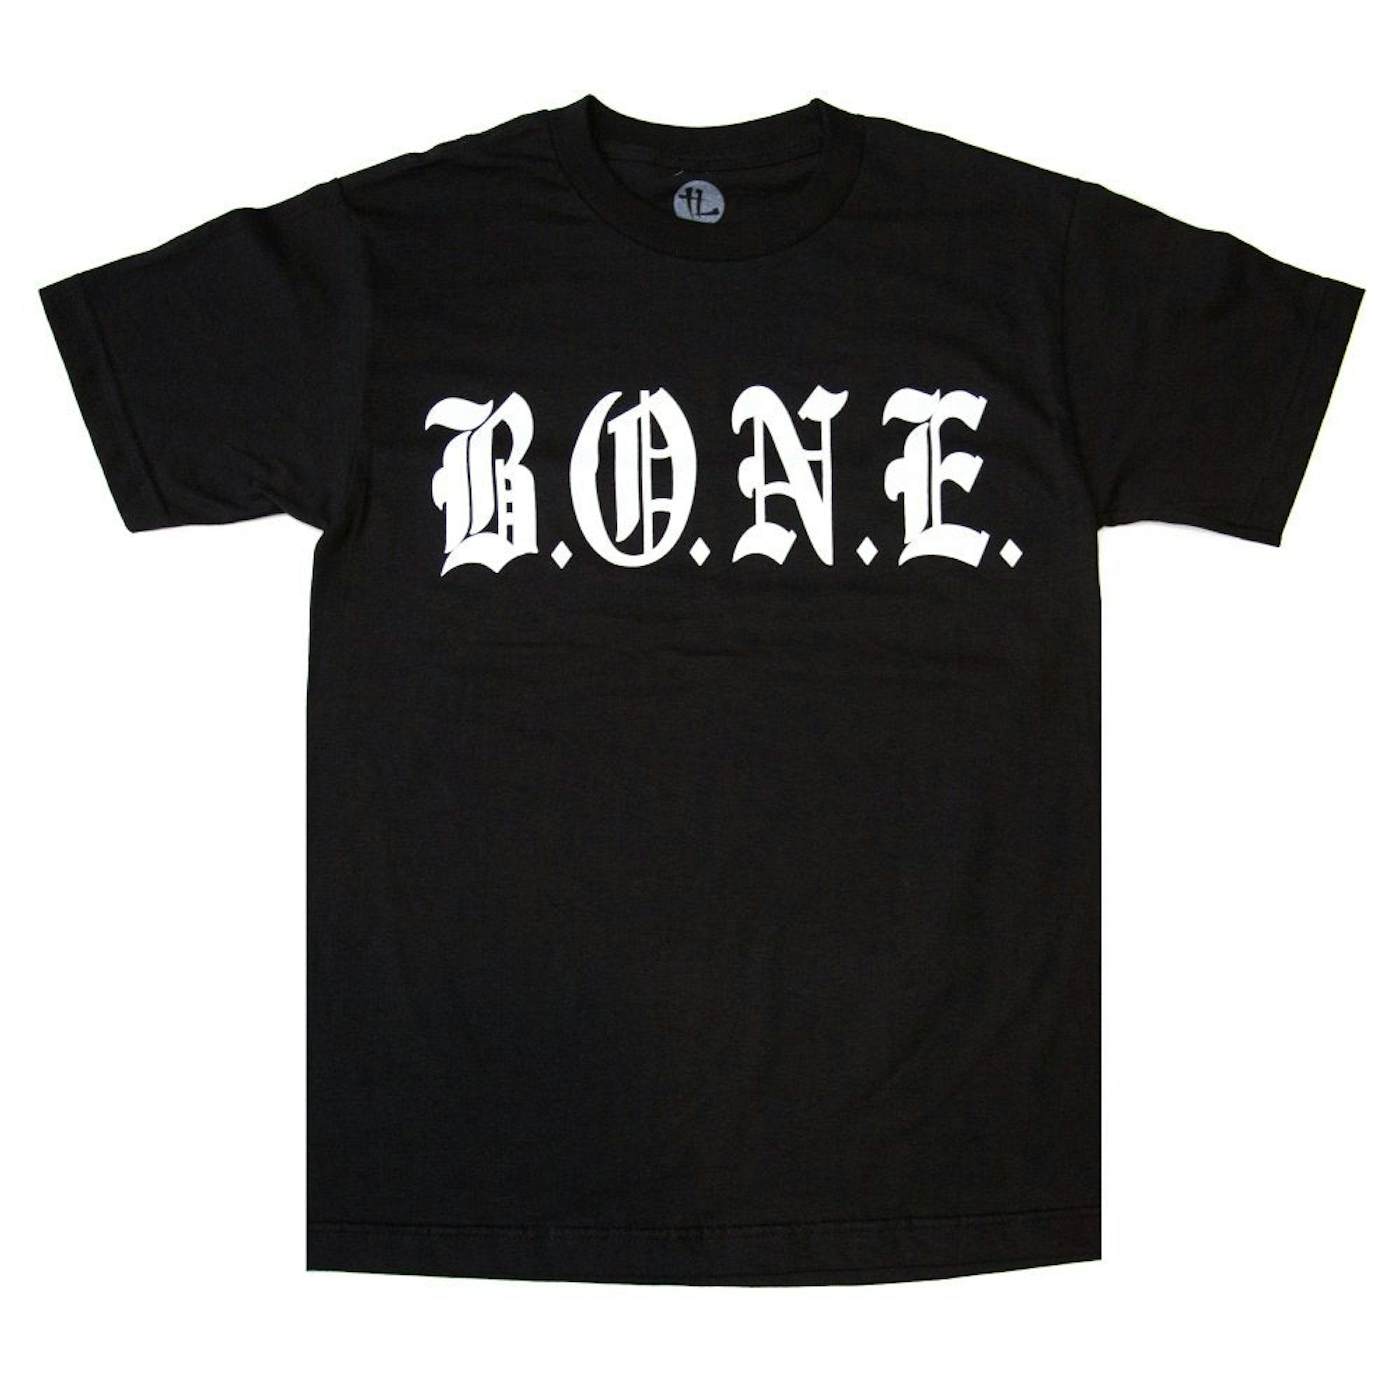 Bone Thugs-N-Harmony Vintage B.O.N.E. Tee "Black"